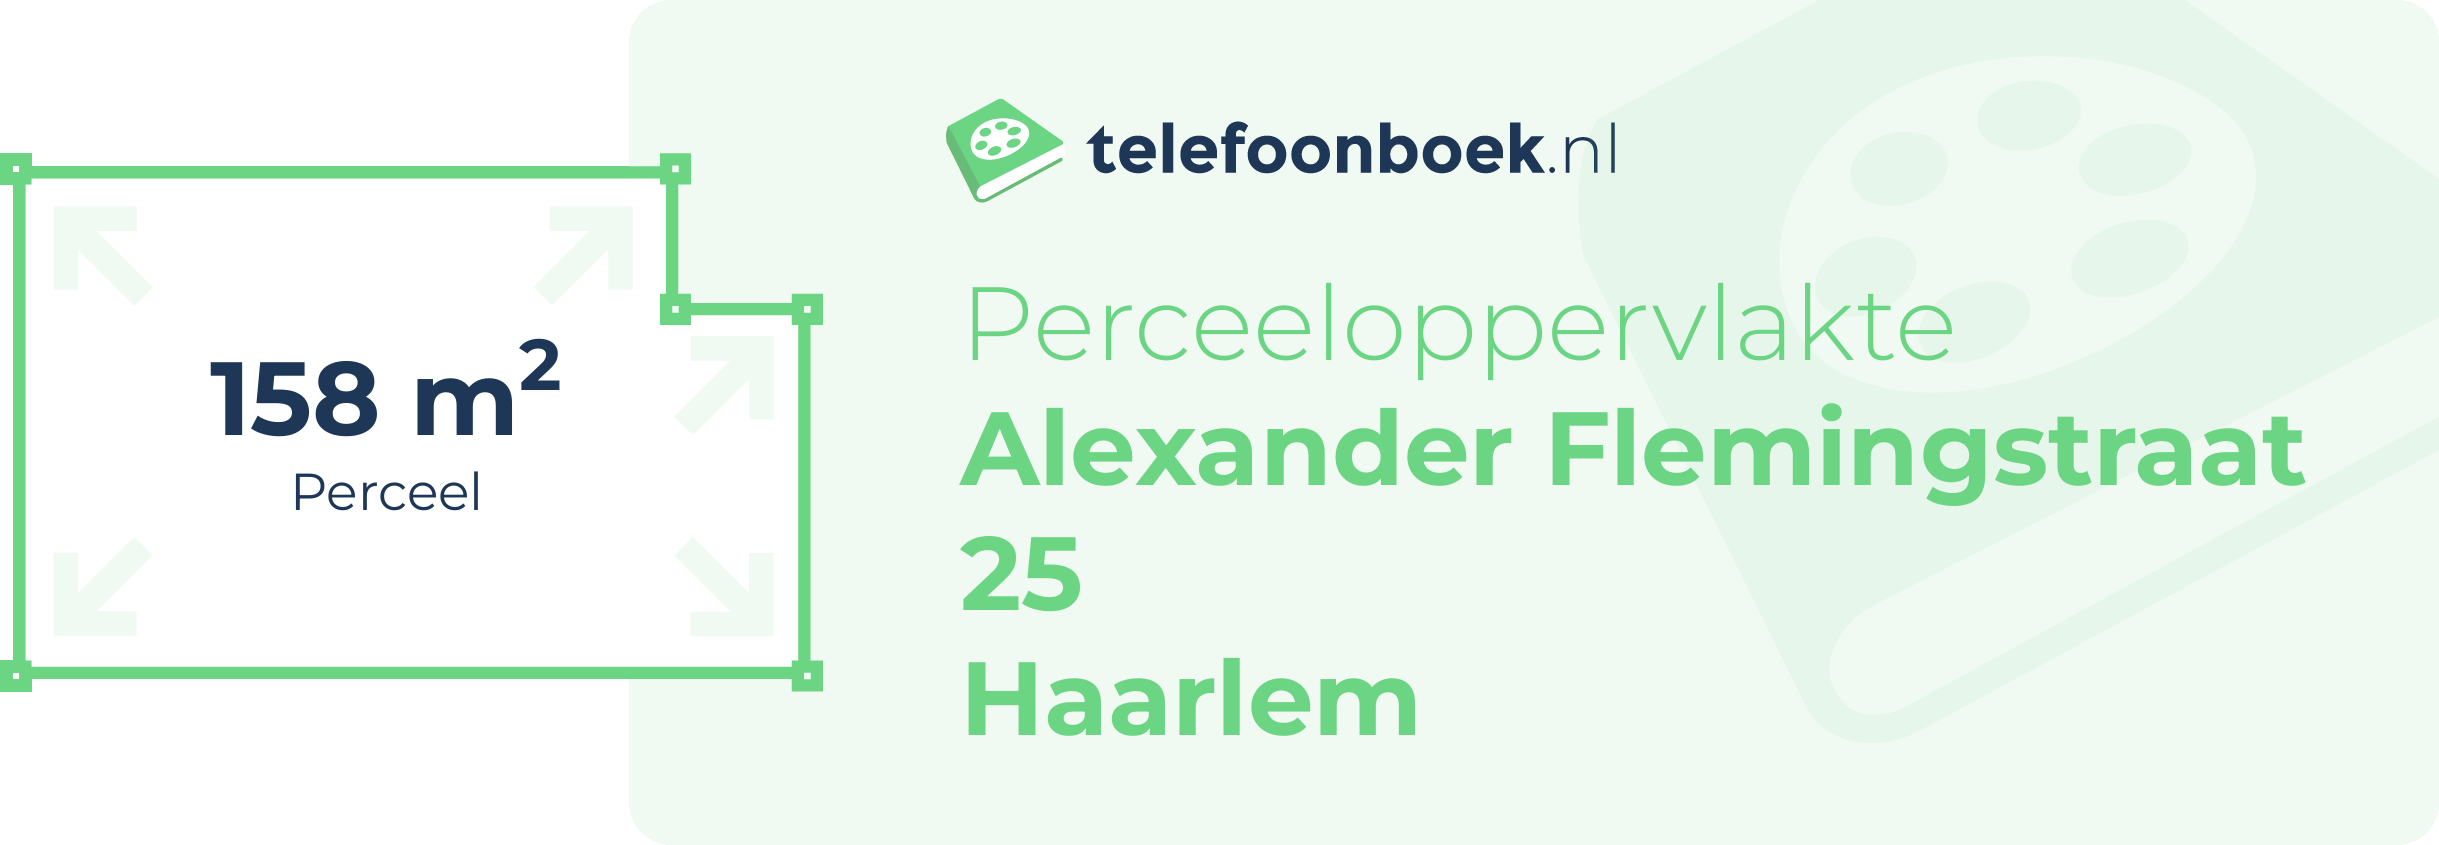 Perceeloppervlakte Alexander Flemingstraat 25 Haarlem